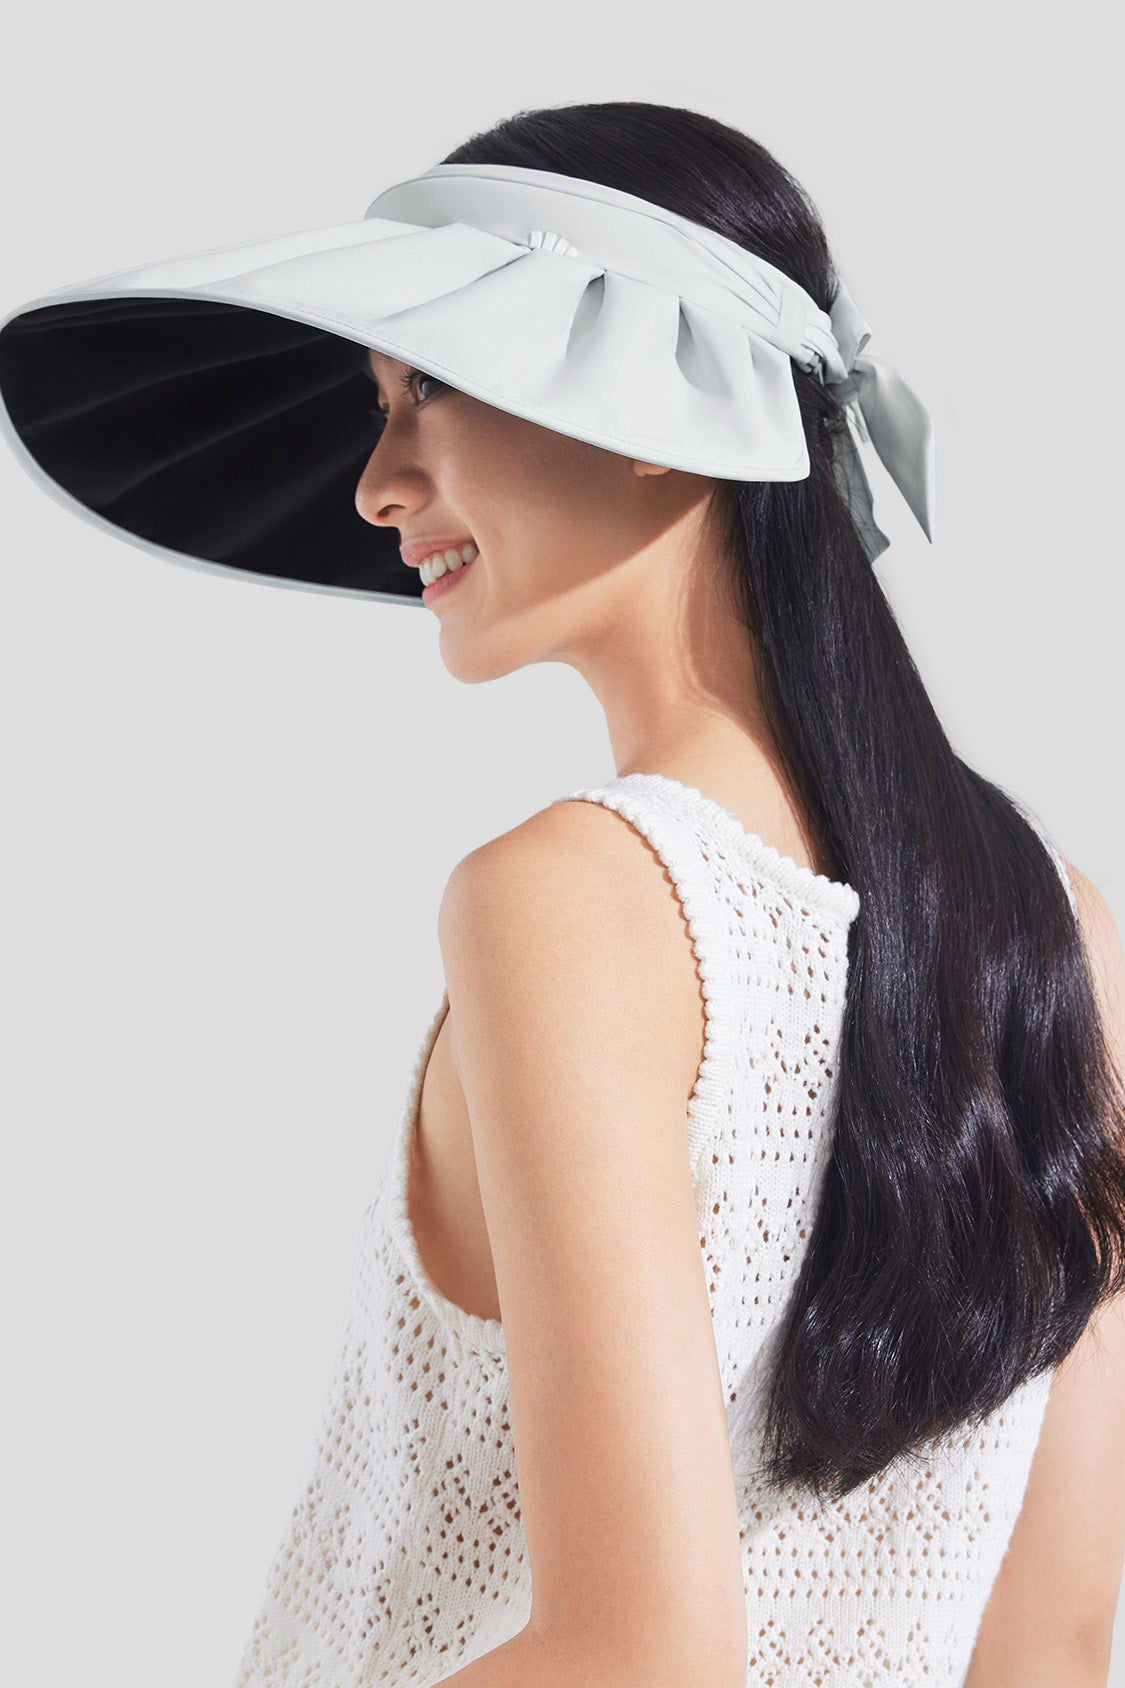 Women's Visor Hat UV Protection Wide Brim Adjustable Face Sheild